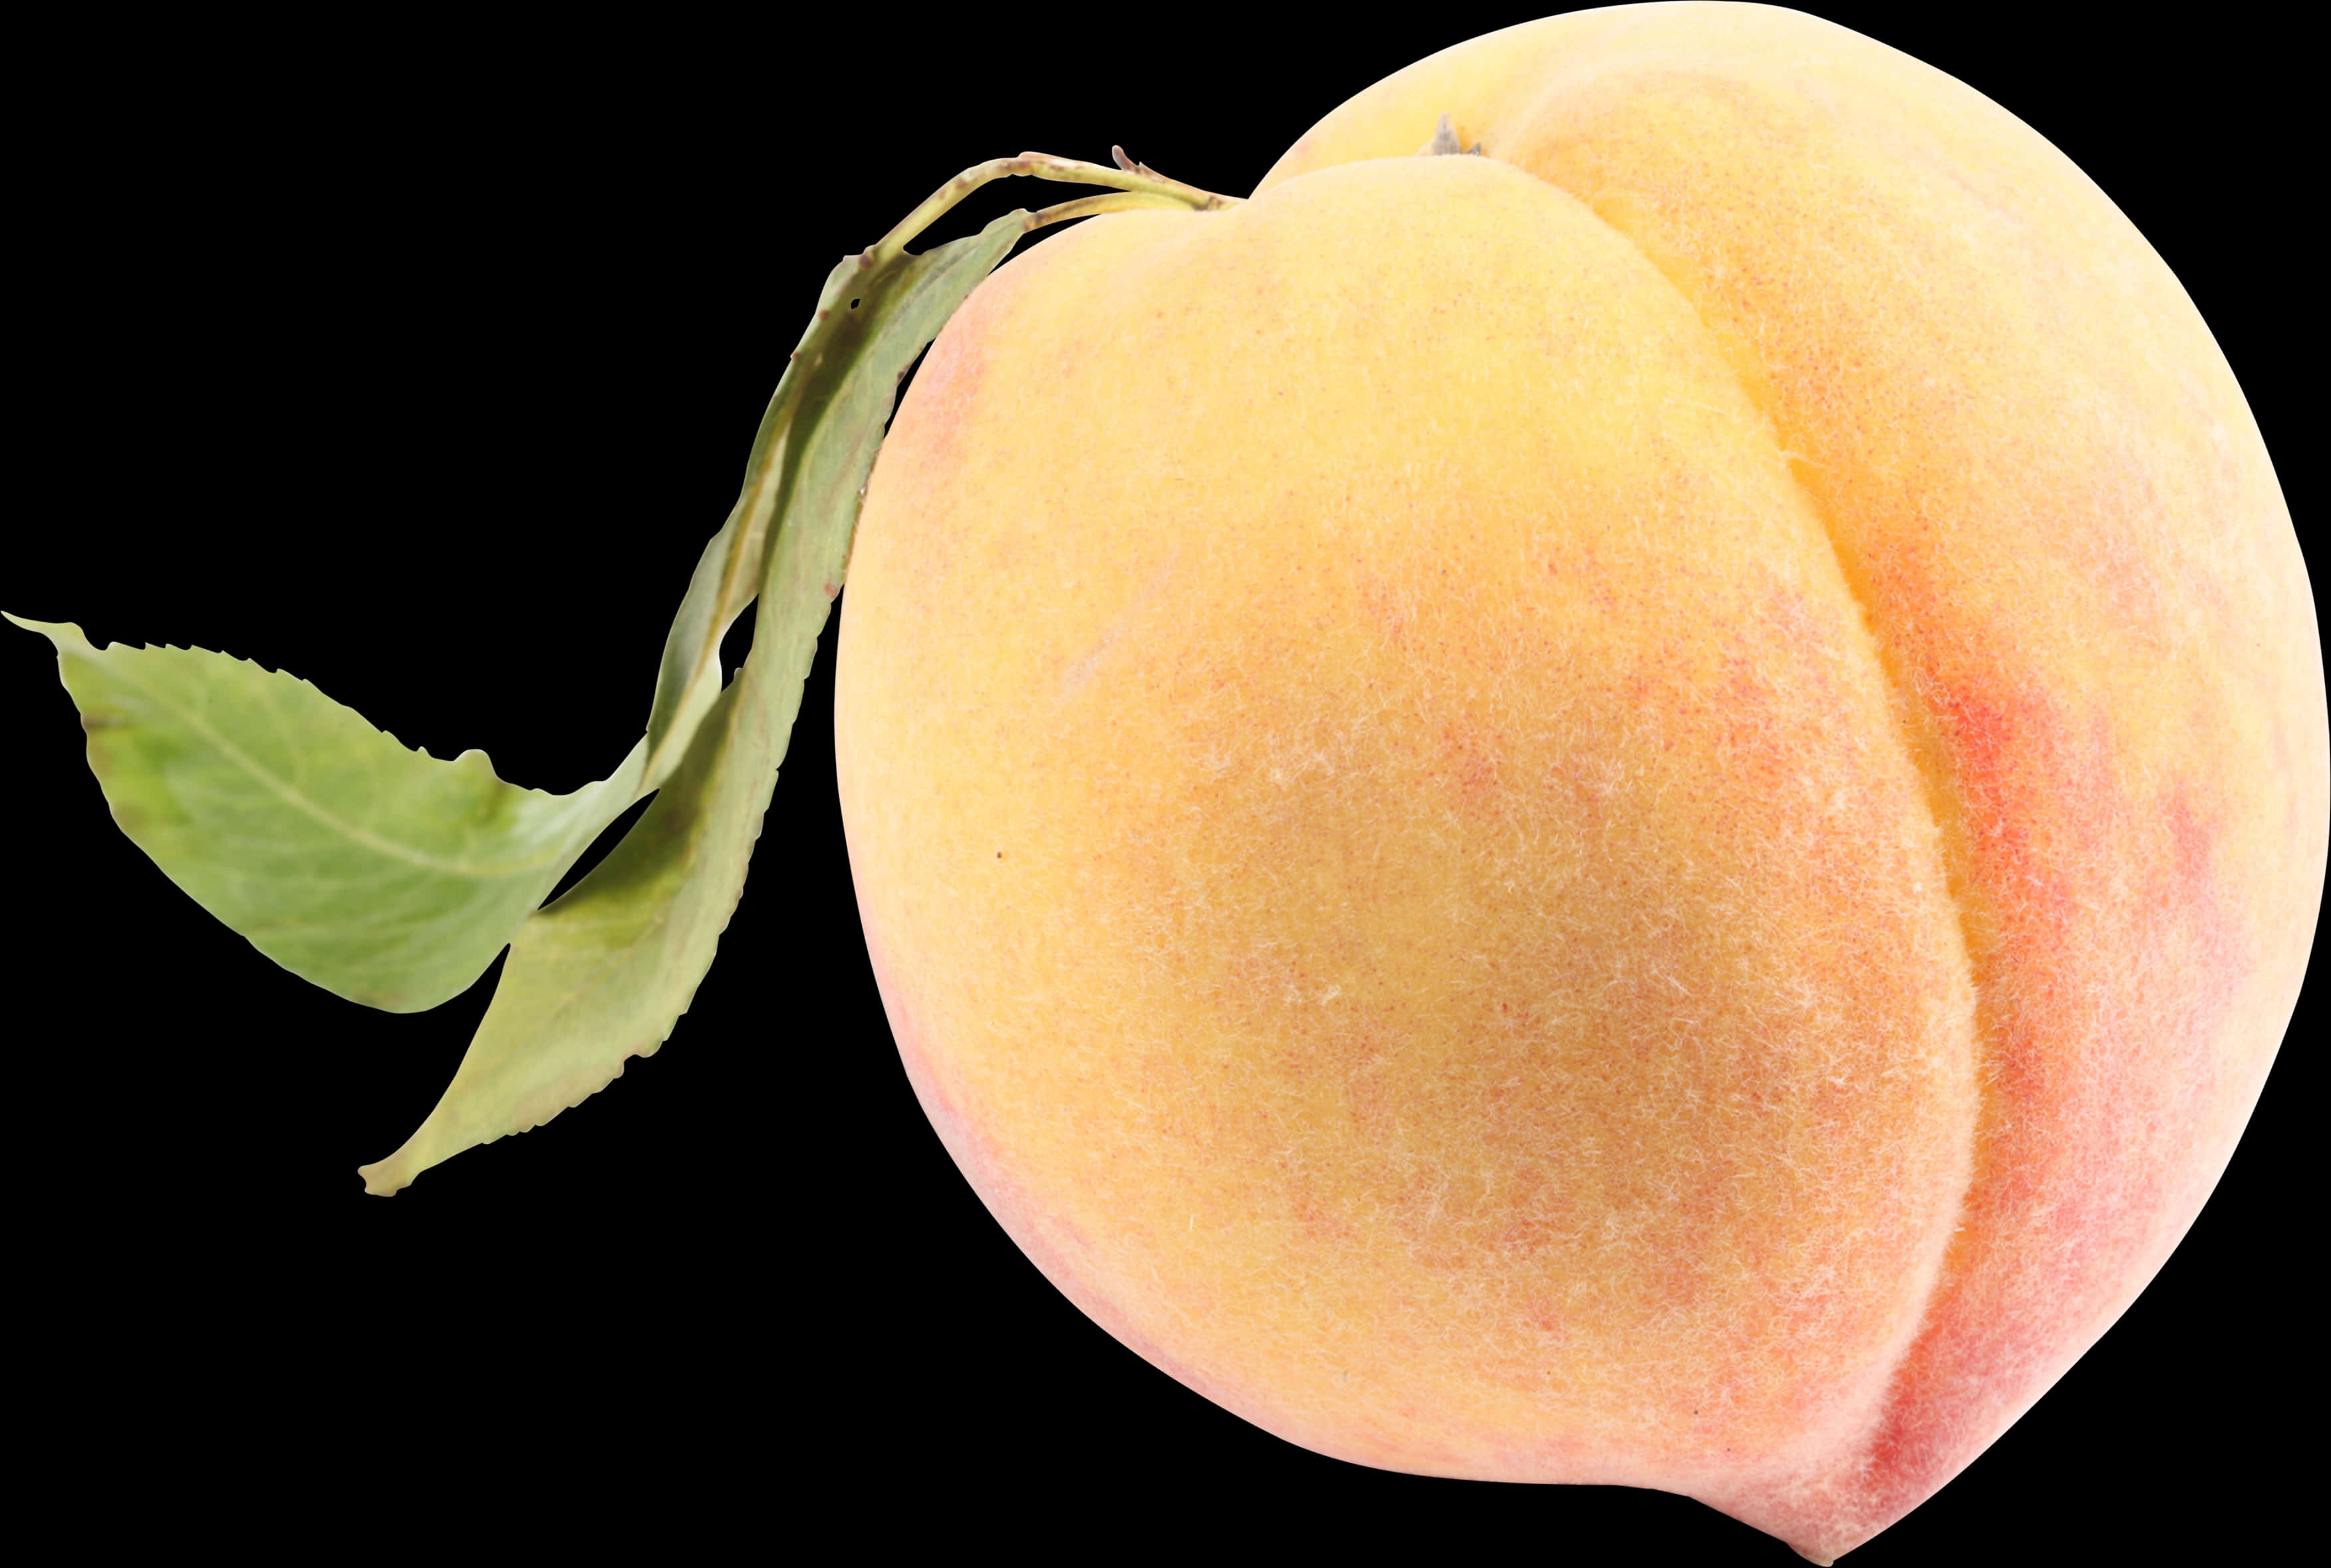 Uneven Peach